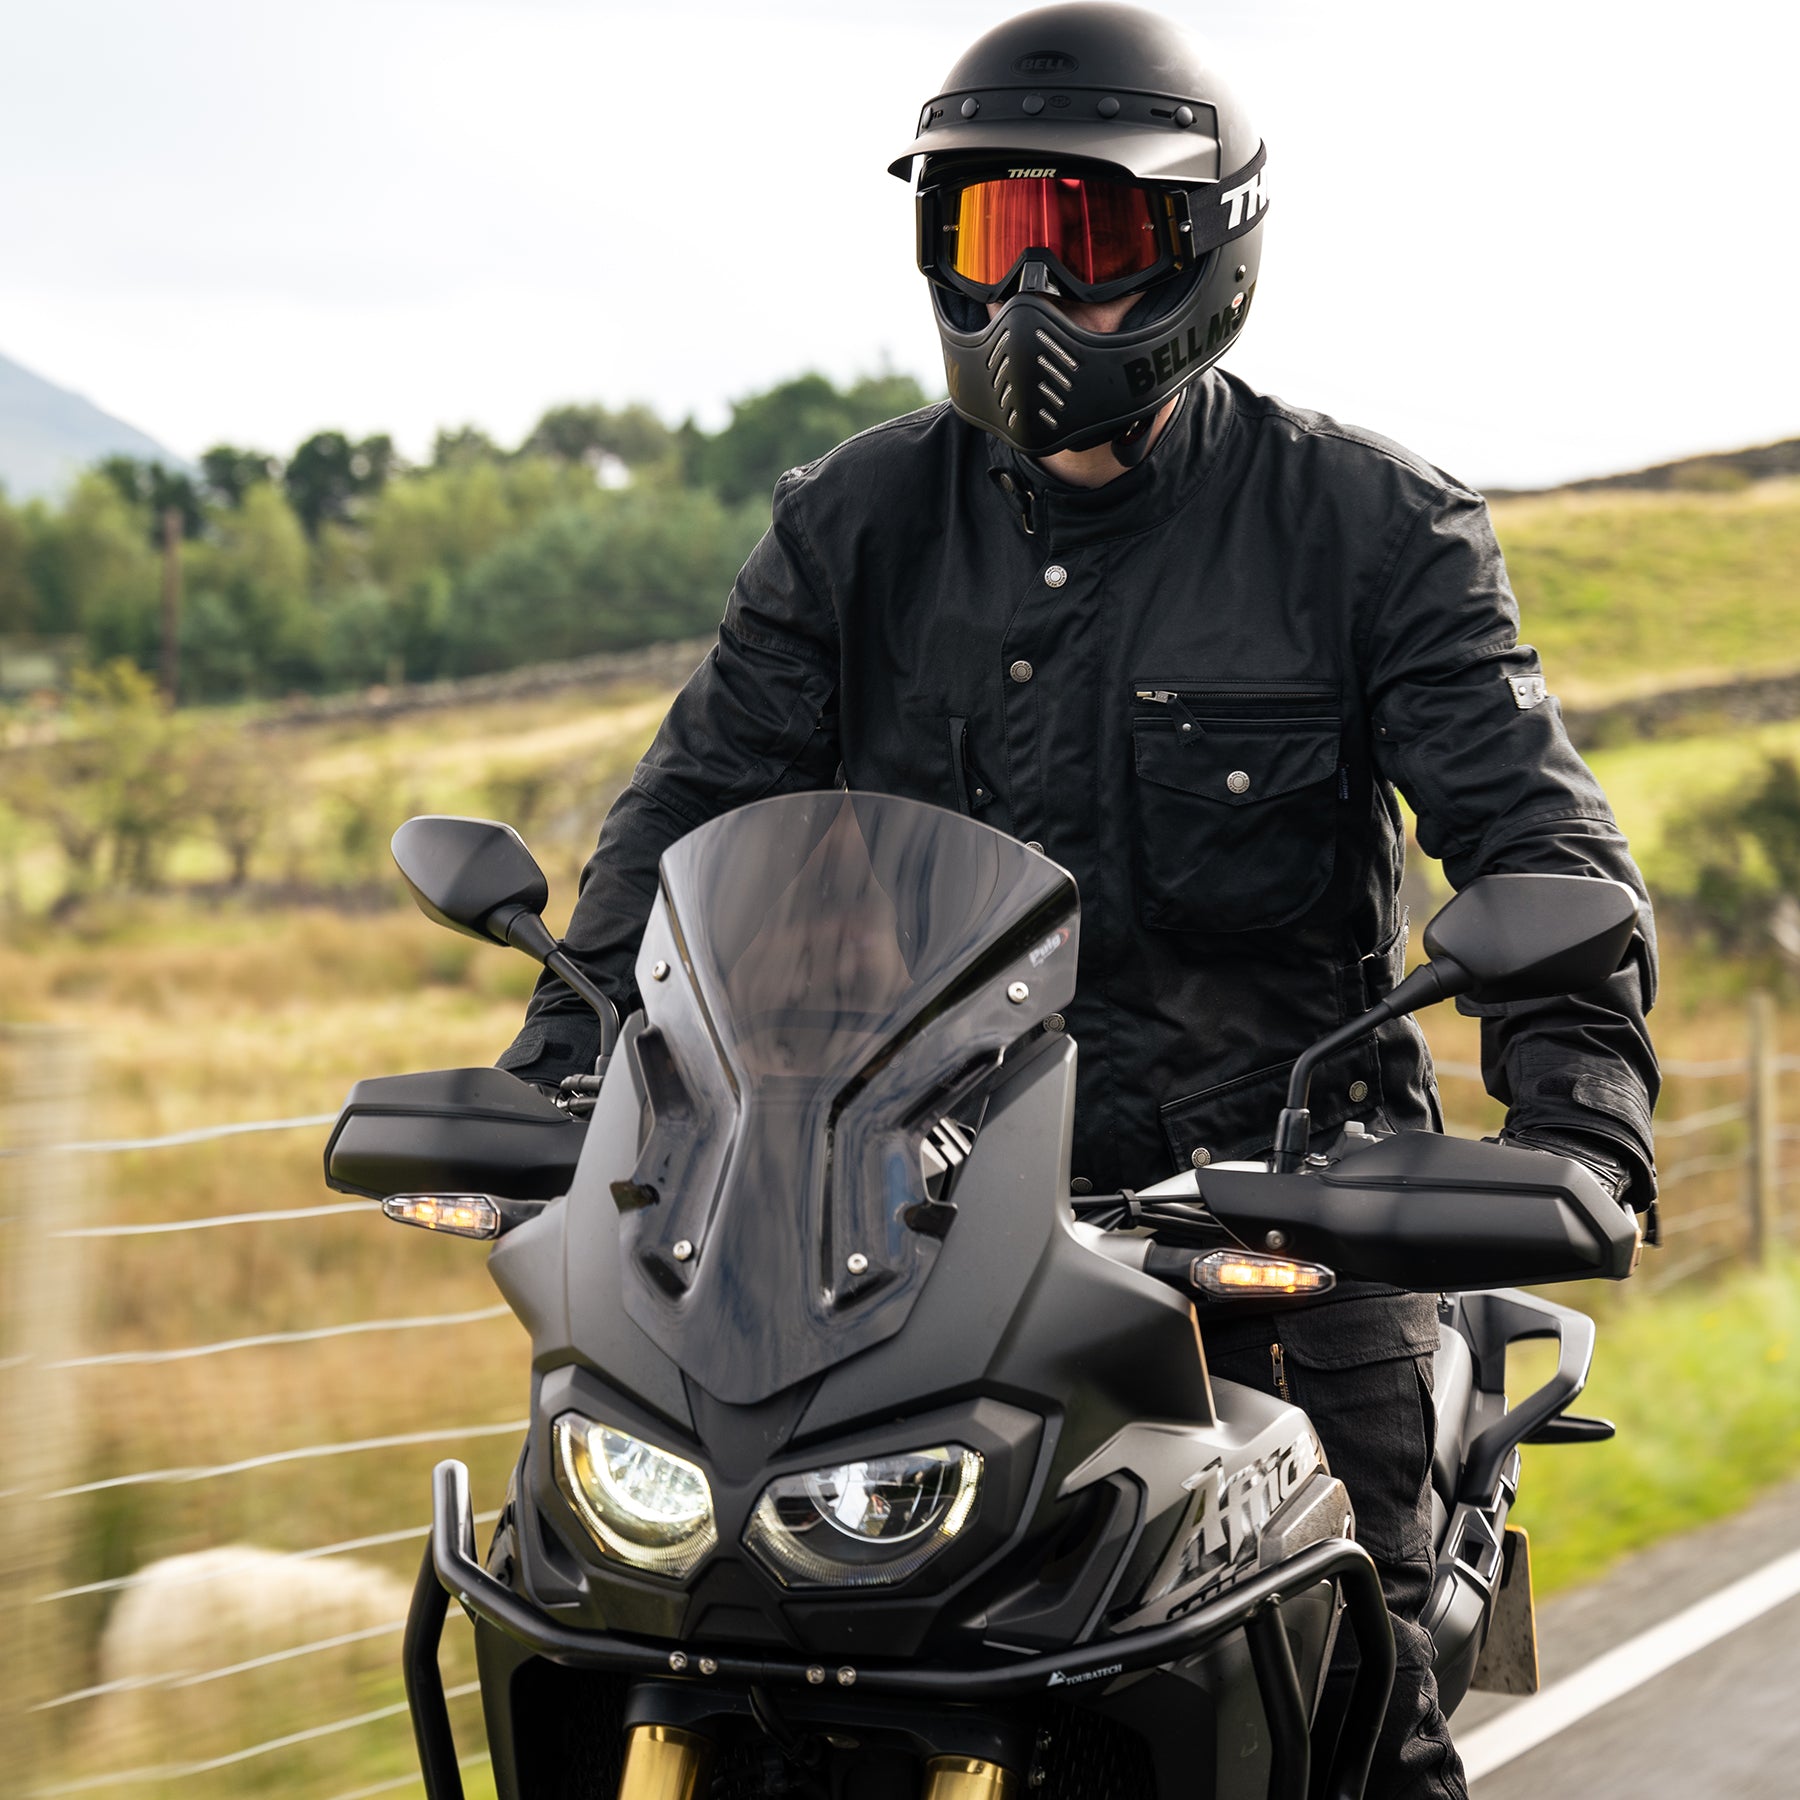 Giacca moto pelle UOMO Merlin Derrington marrone Merlin Bike Gear, vendita  online accessori moto, valige alluminio per moto bmw